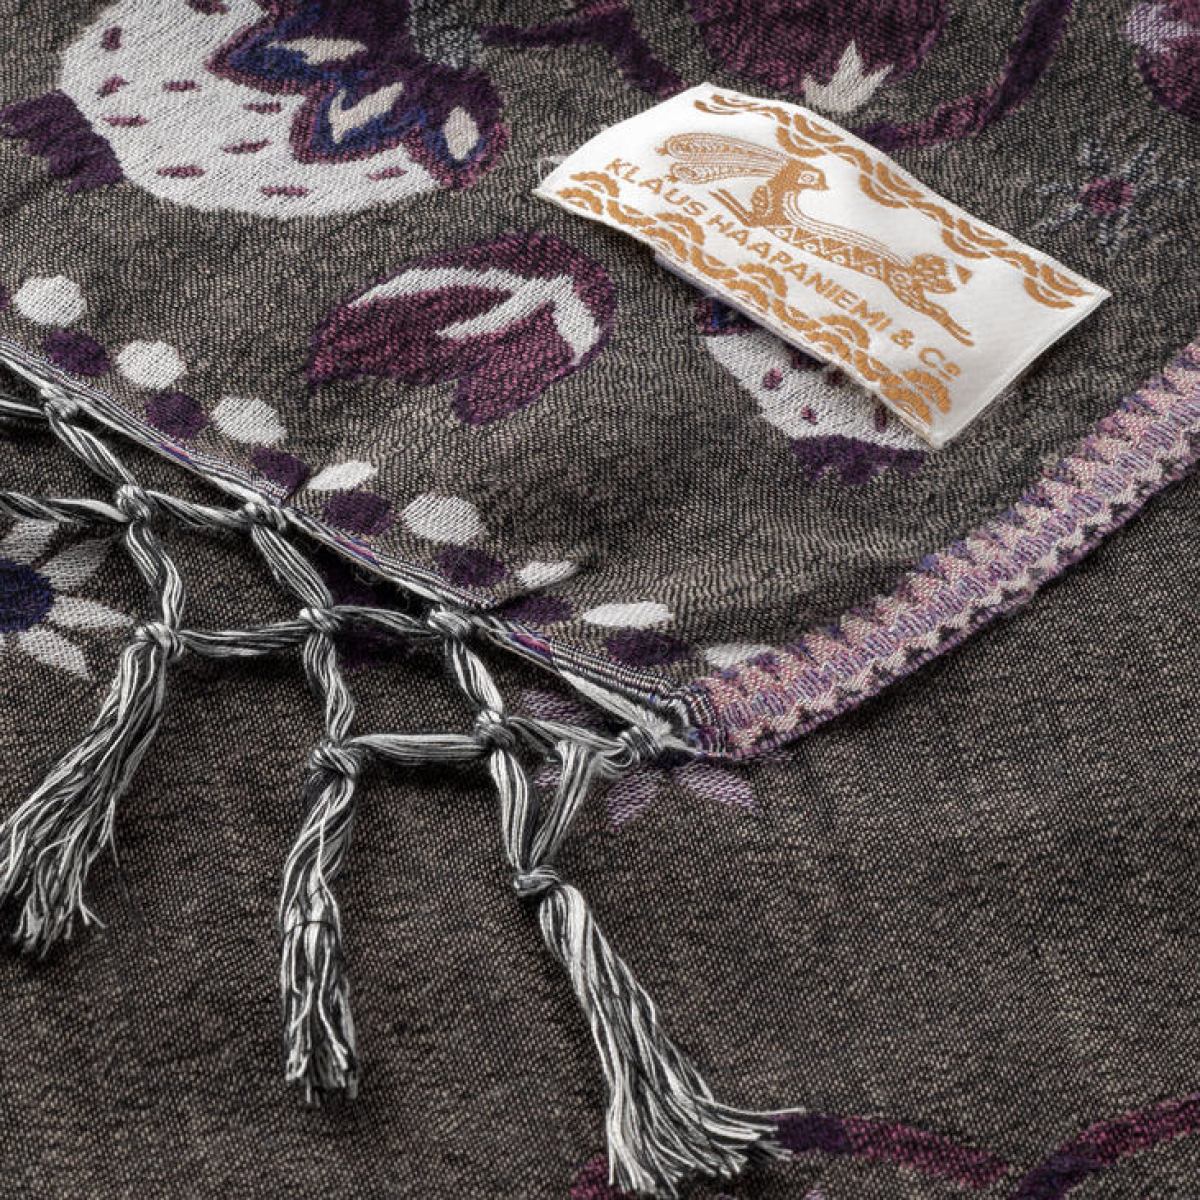 Gewebtes Halstuch mit Hasen-Motiv (violett) aus Wolle und Seide (150 x 150 cm)